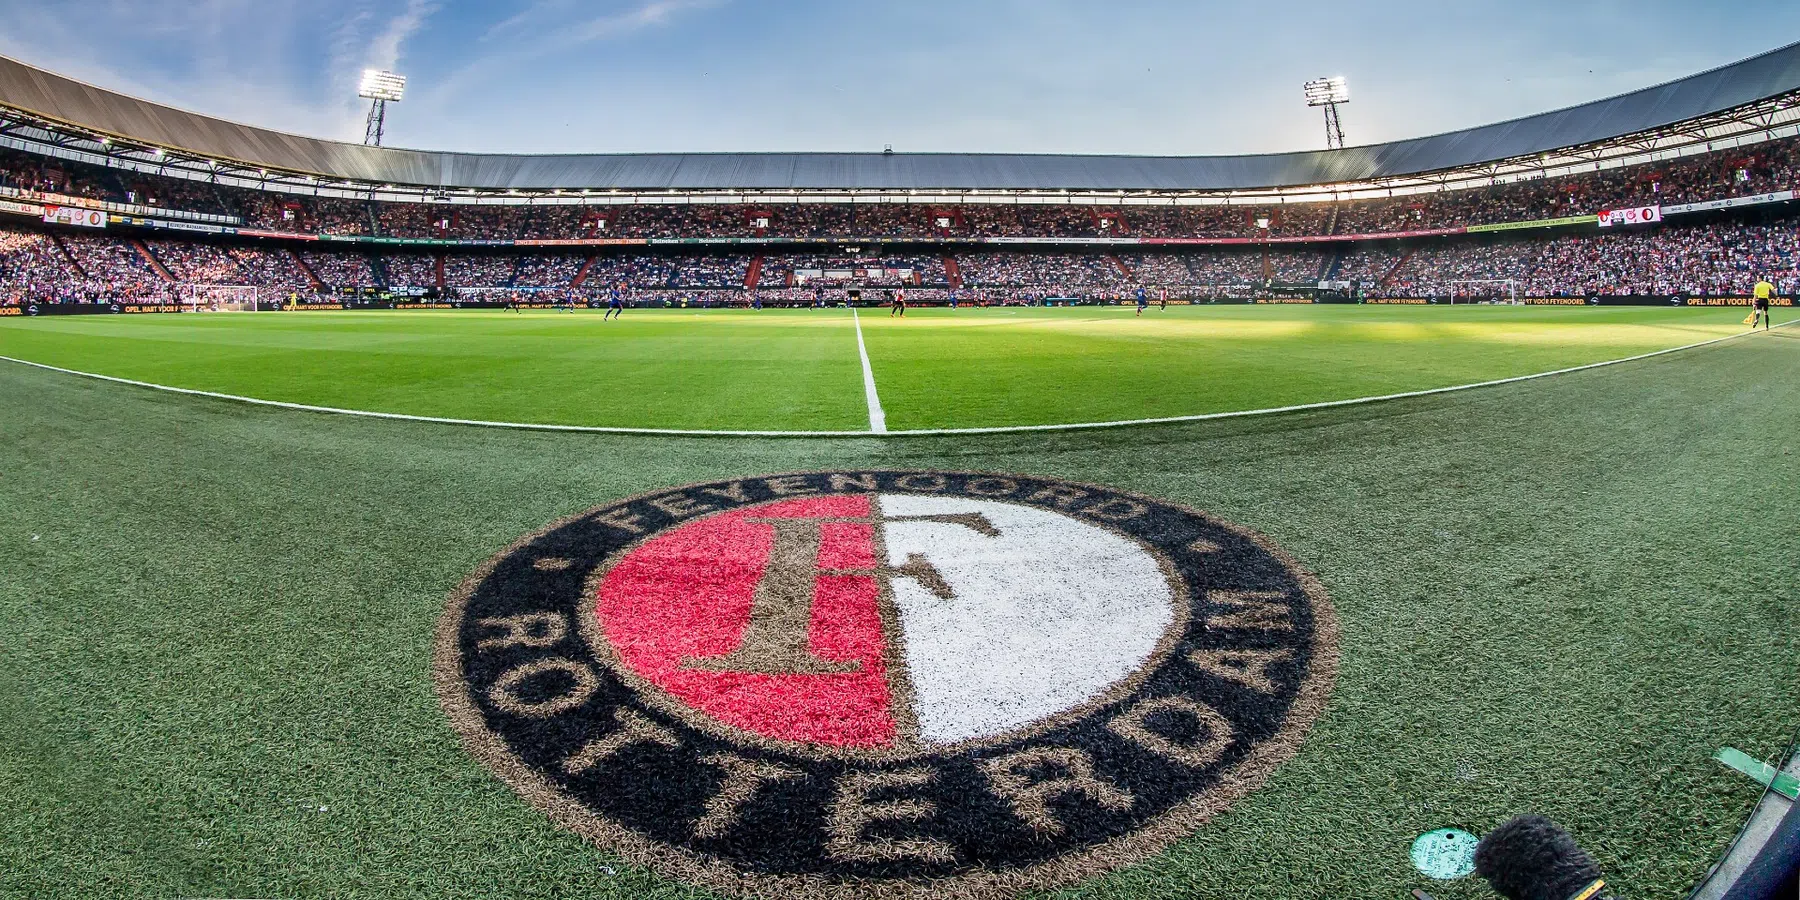 Wie is Geneugelijk, de nieuwe doelman van Feyenoord die overkomt van Excelsior?